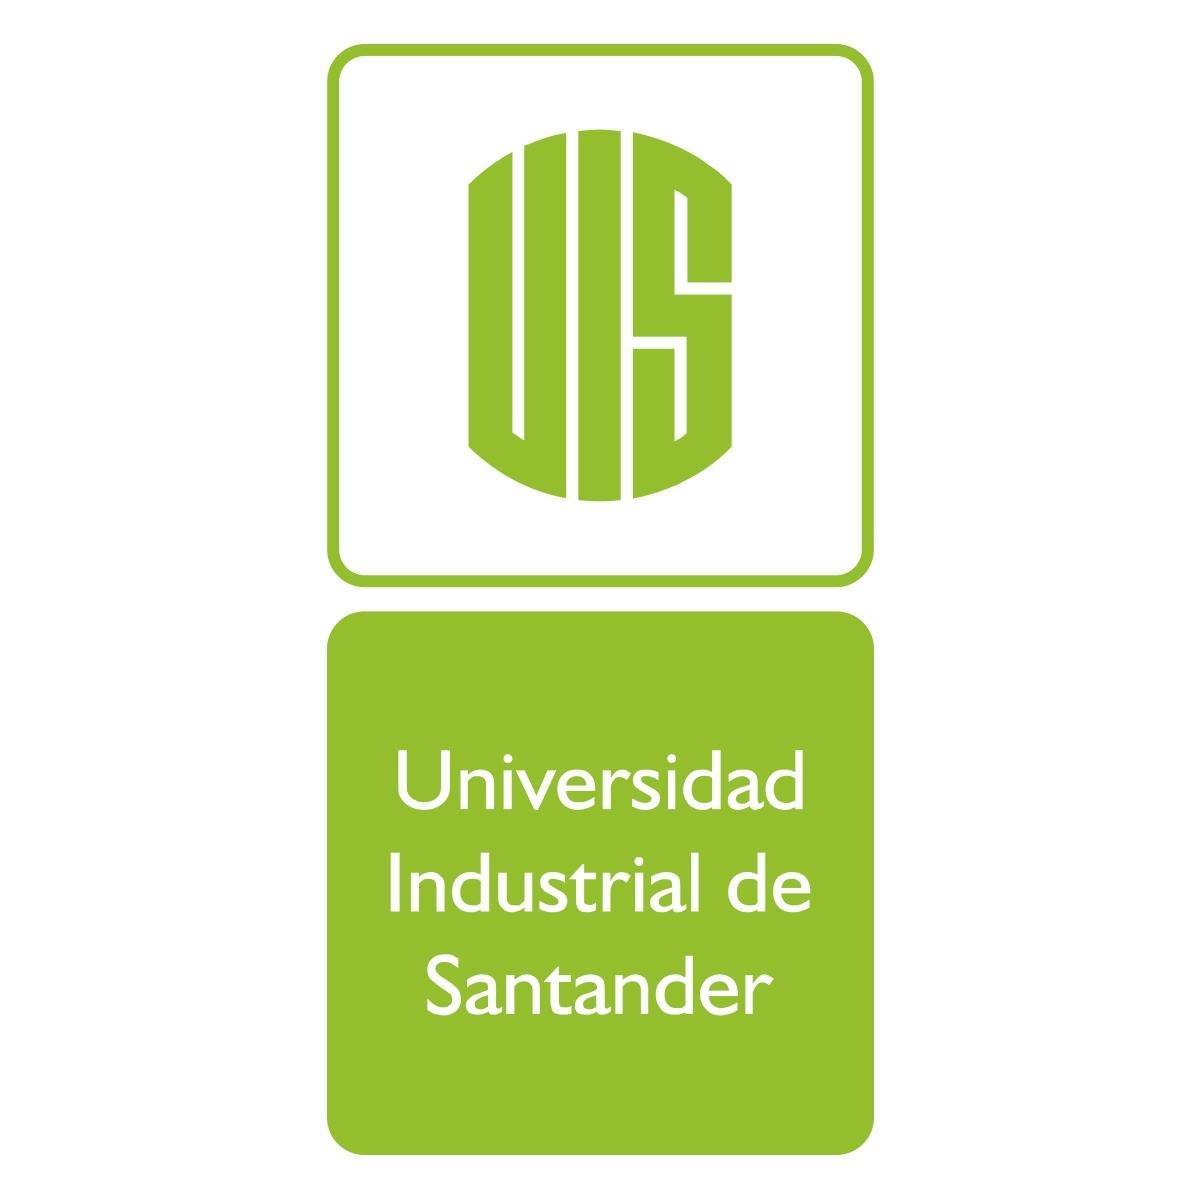 UIS - Universidad Industrial de Santander